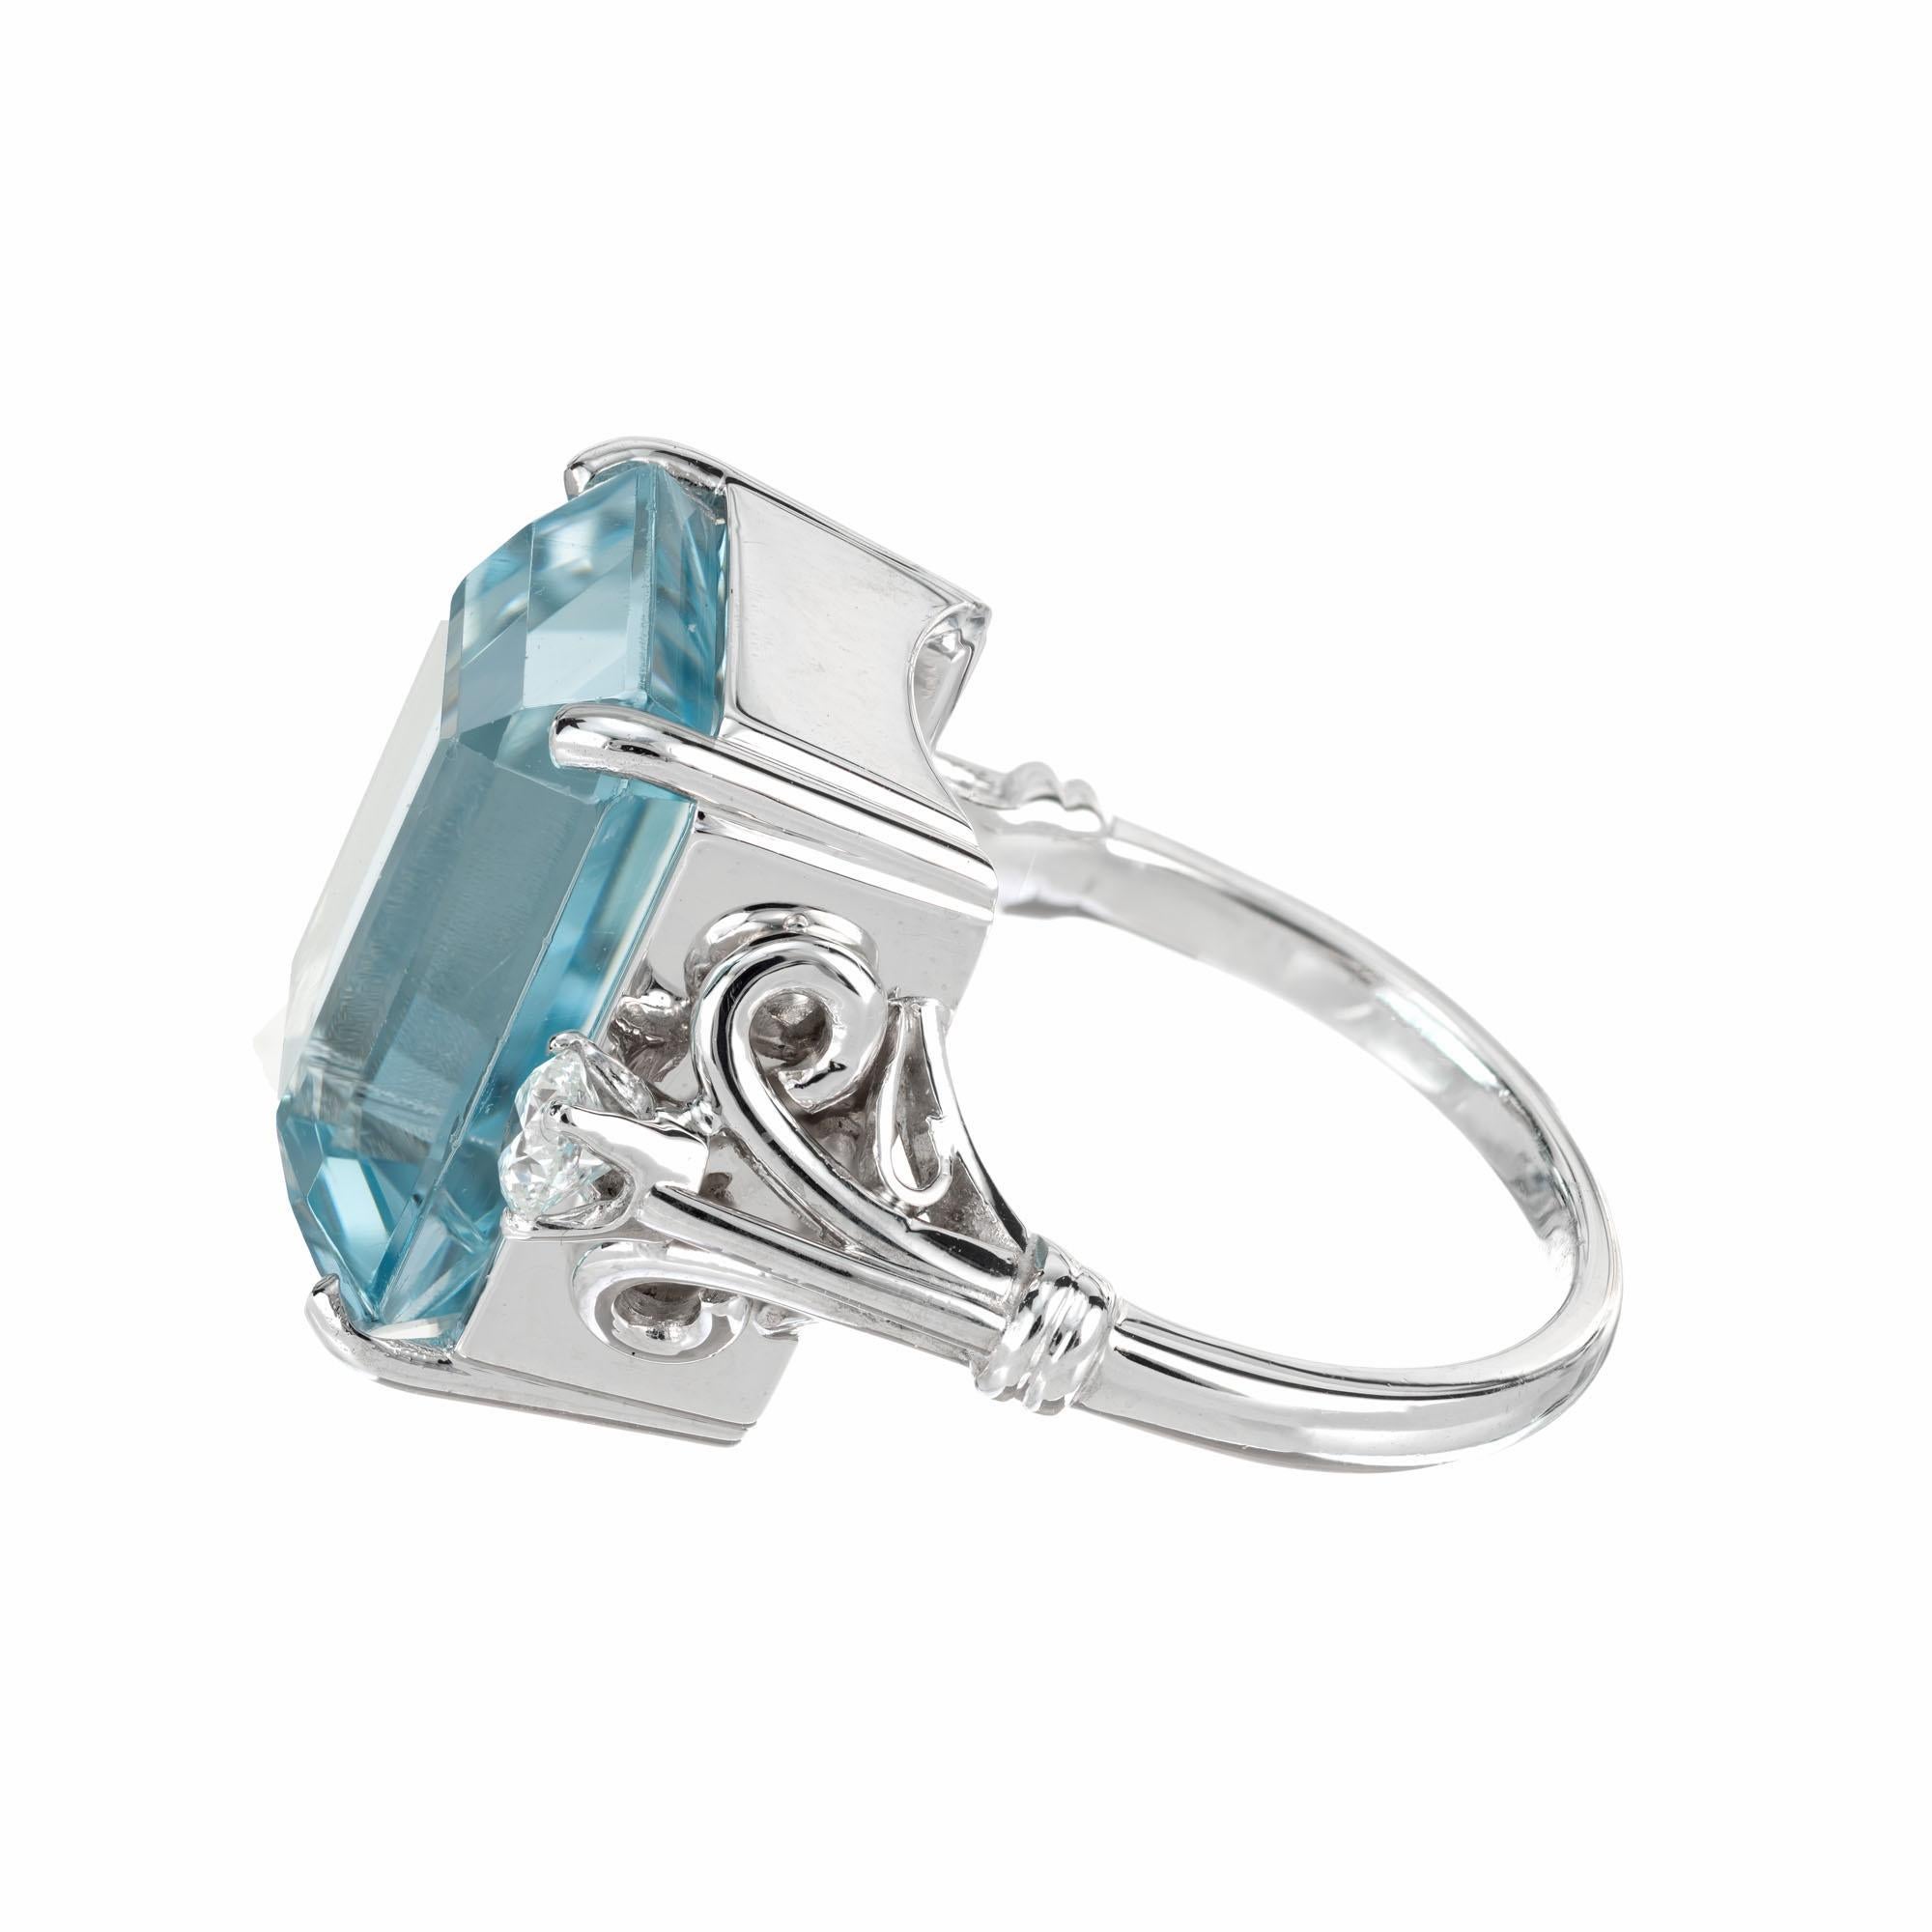 19.58 Carat Aquamarine Diamond Platinum Cocktail Ring In Excellent Condition For Sale In Stamford, CT